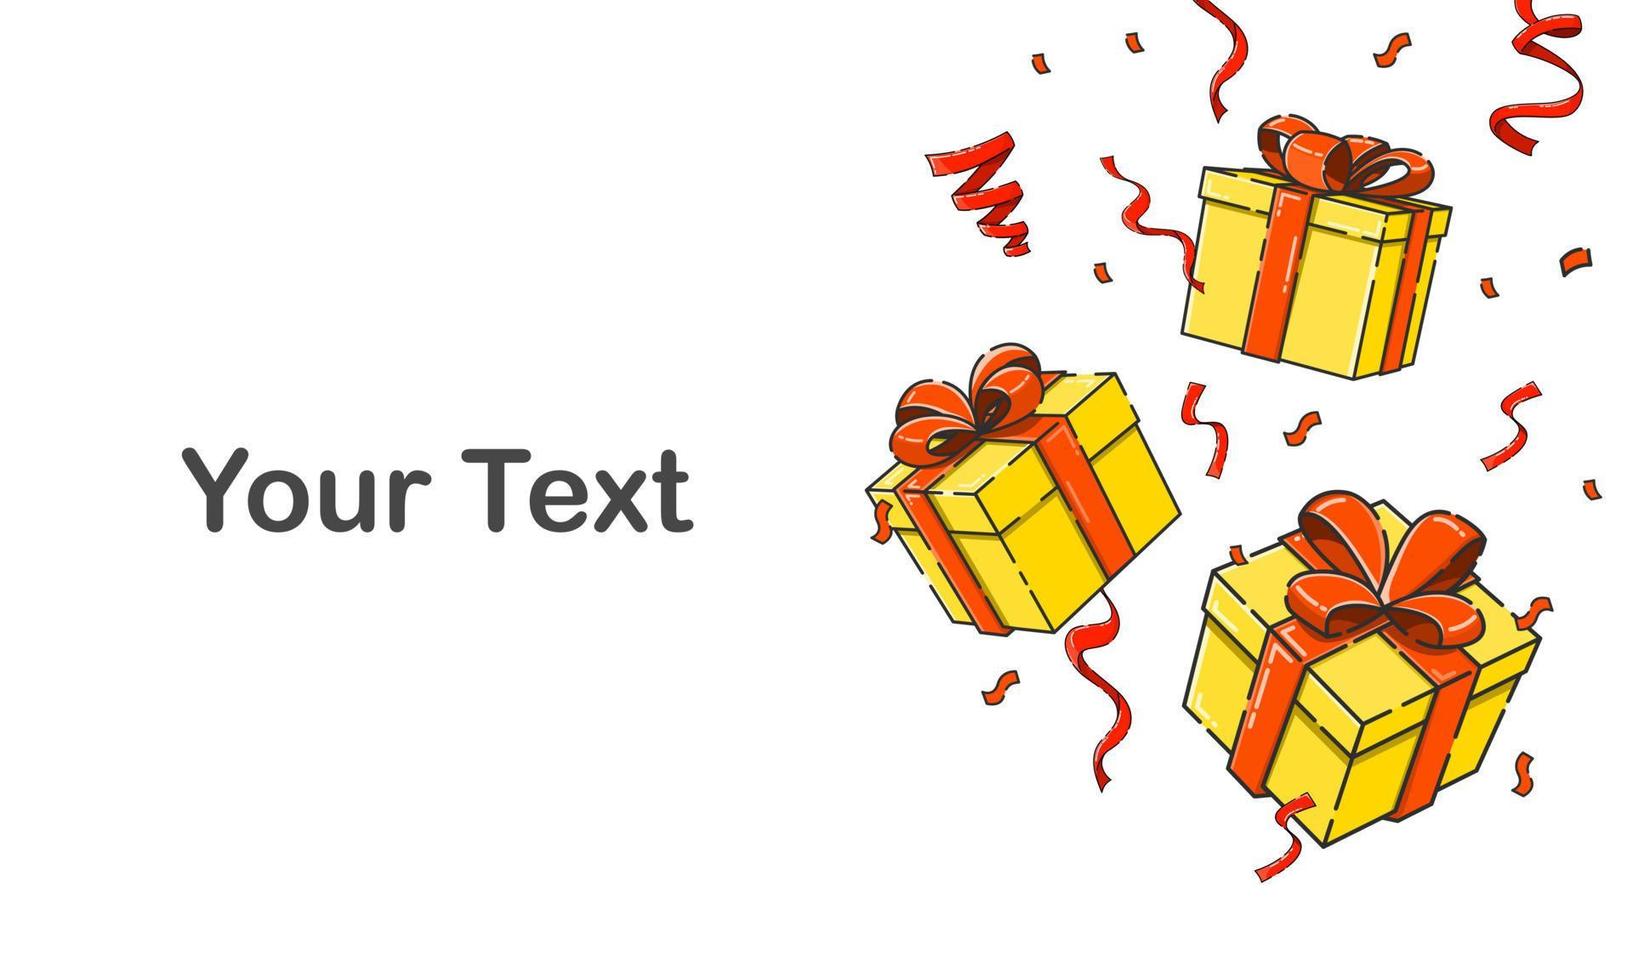 caen cajas de regalo, cuelgan cajas de regalo y espacio para su texto. feliz navidad y feliz año nuevo celebrar vector